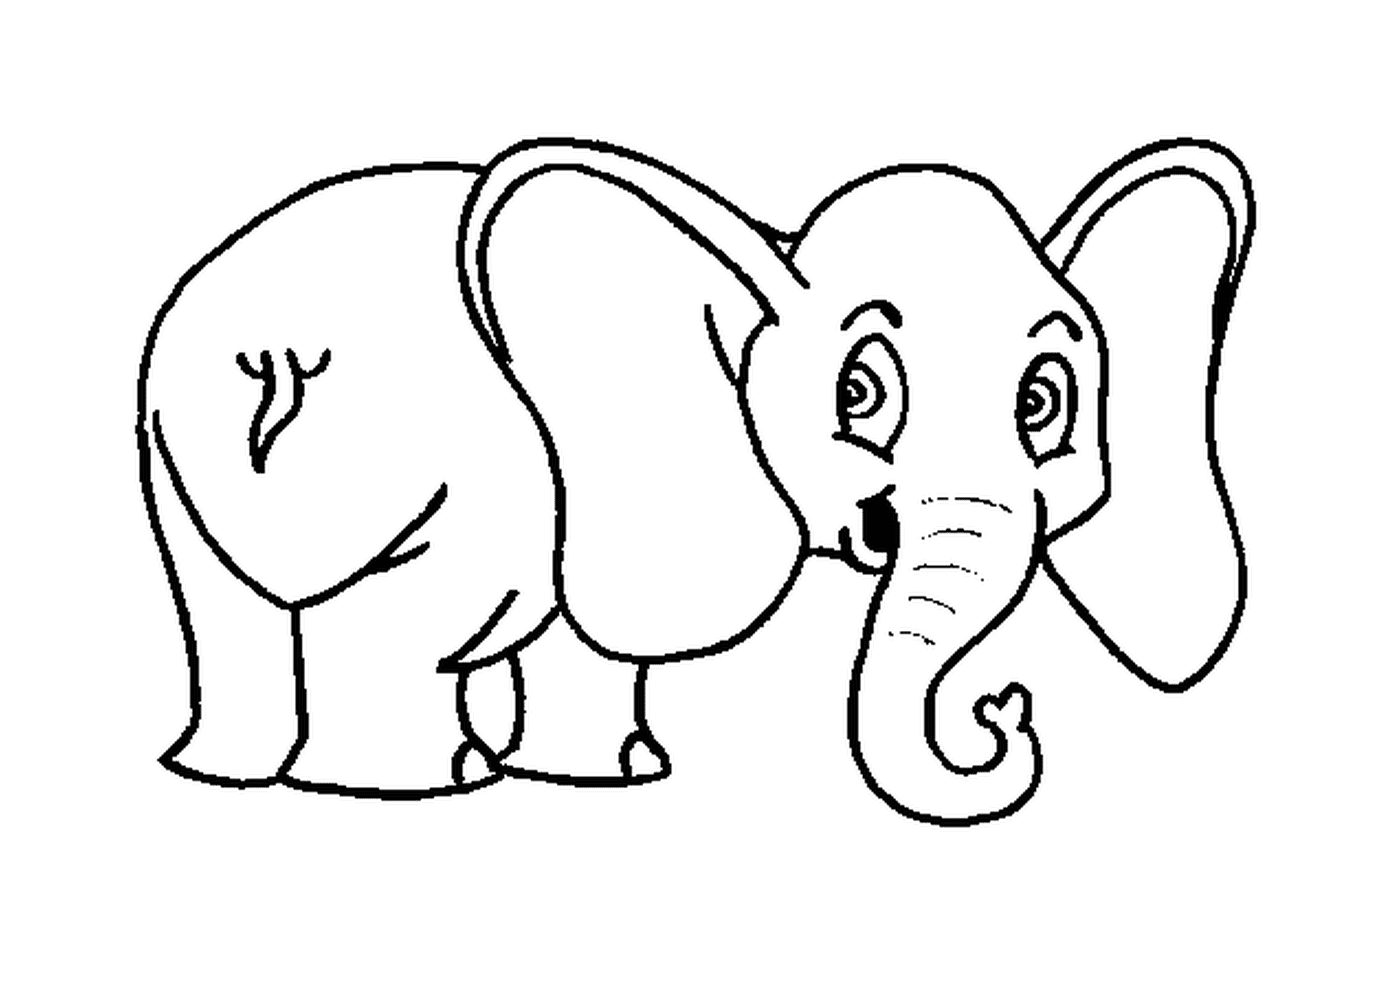  Un elefante dibujado con orejas grandes 